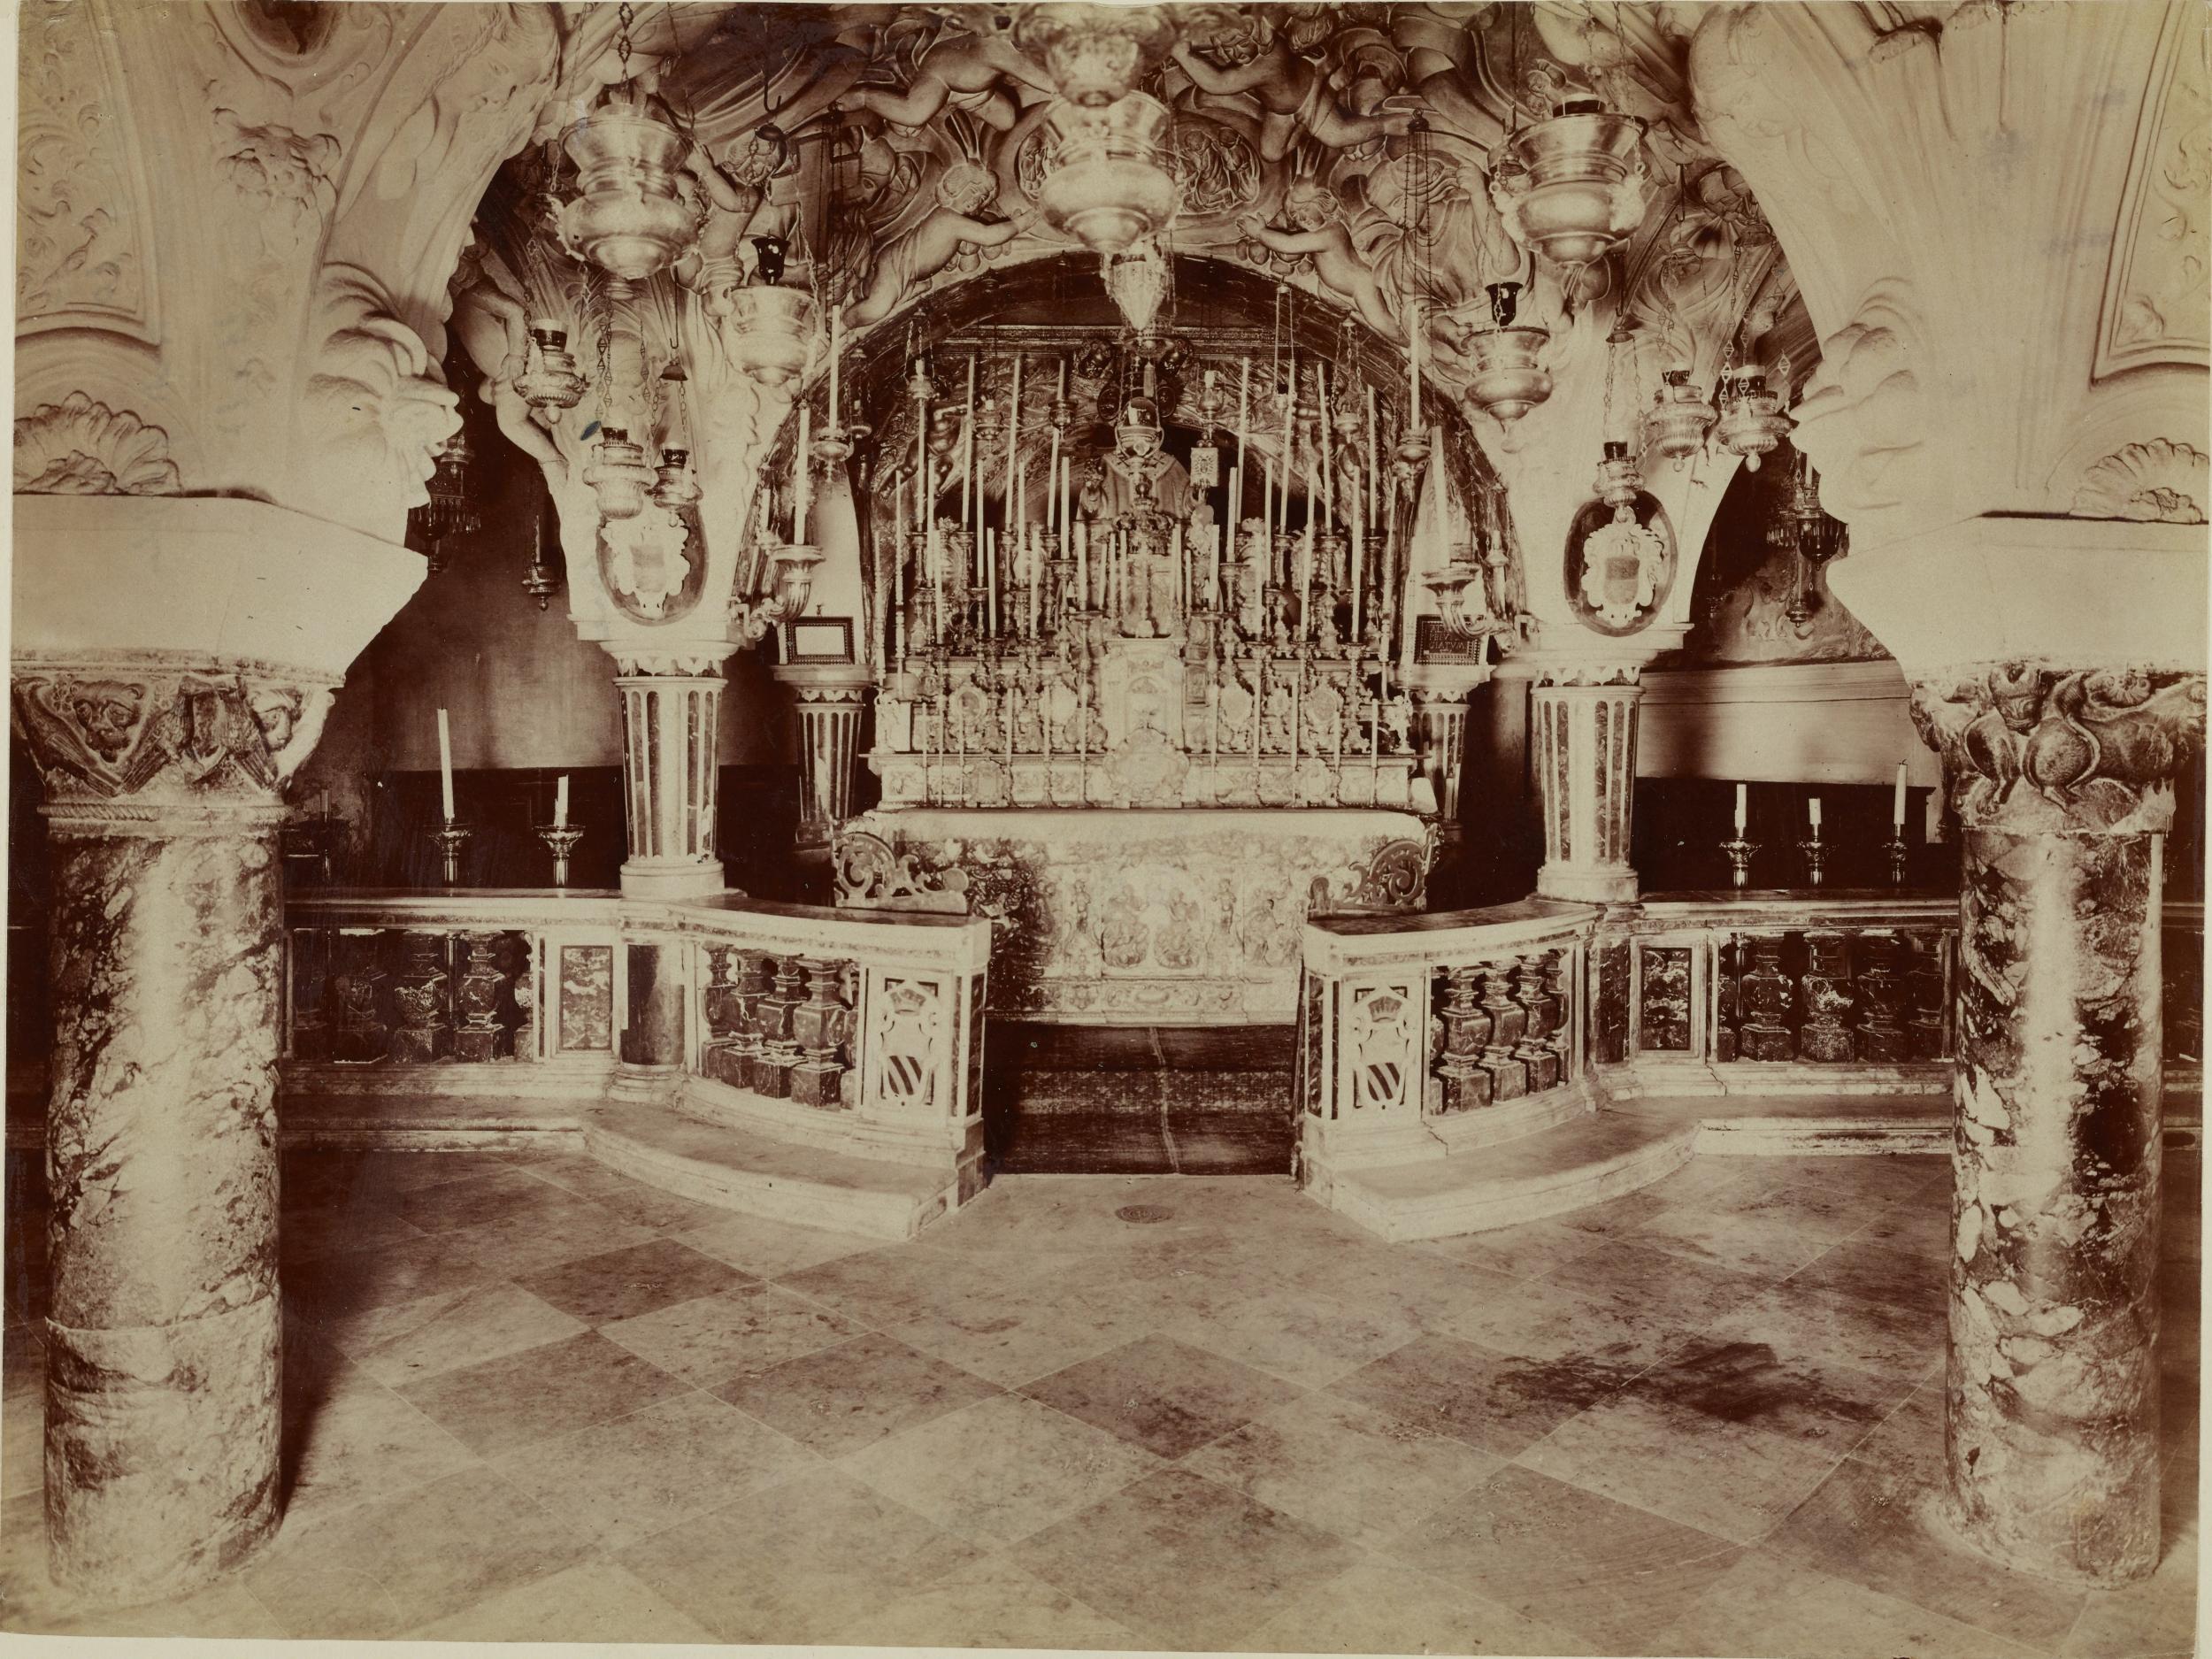 Fotografo non identificato, Bari - Basilica di S. Nicola, cripta, altare della cripta di S. Nicola, veduta d'insieme, 1891-1910, gelatina ai sali d'argento/carta, MPI136819